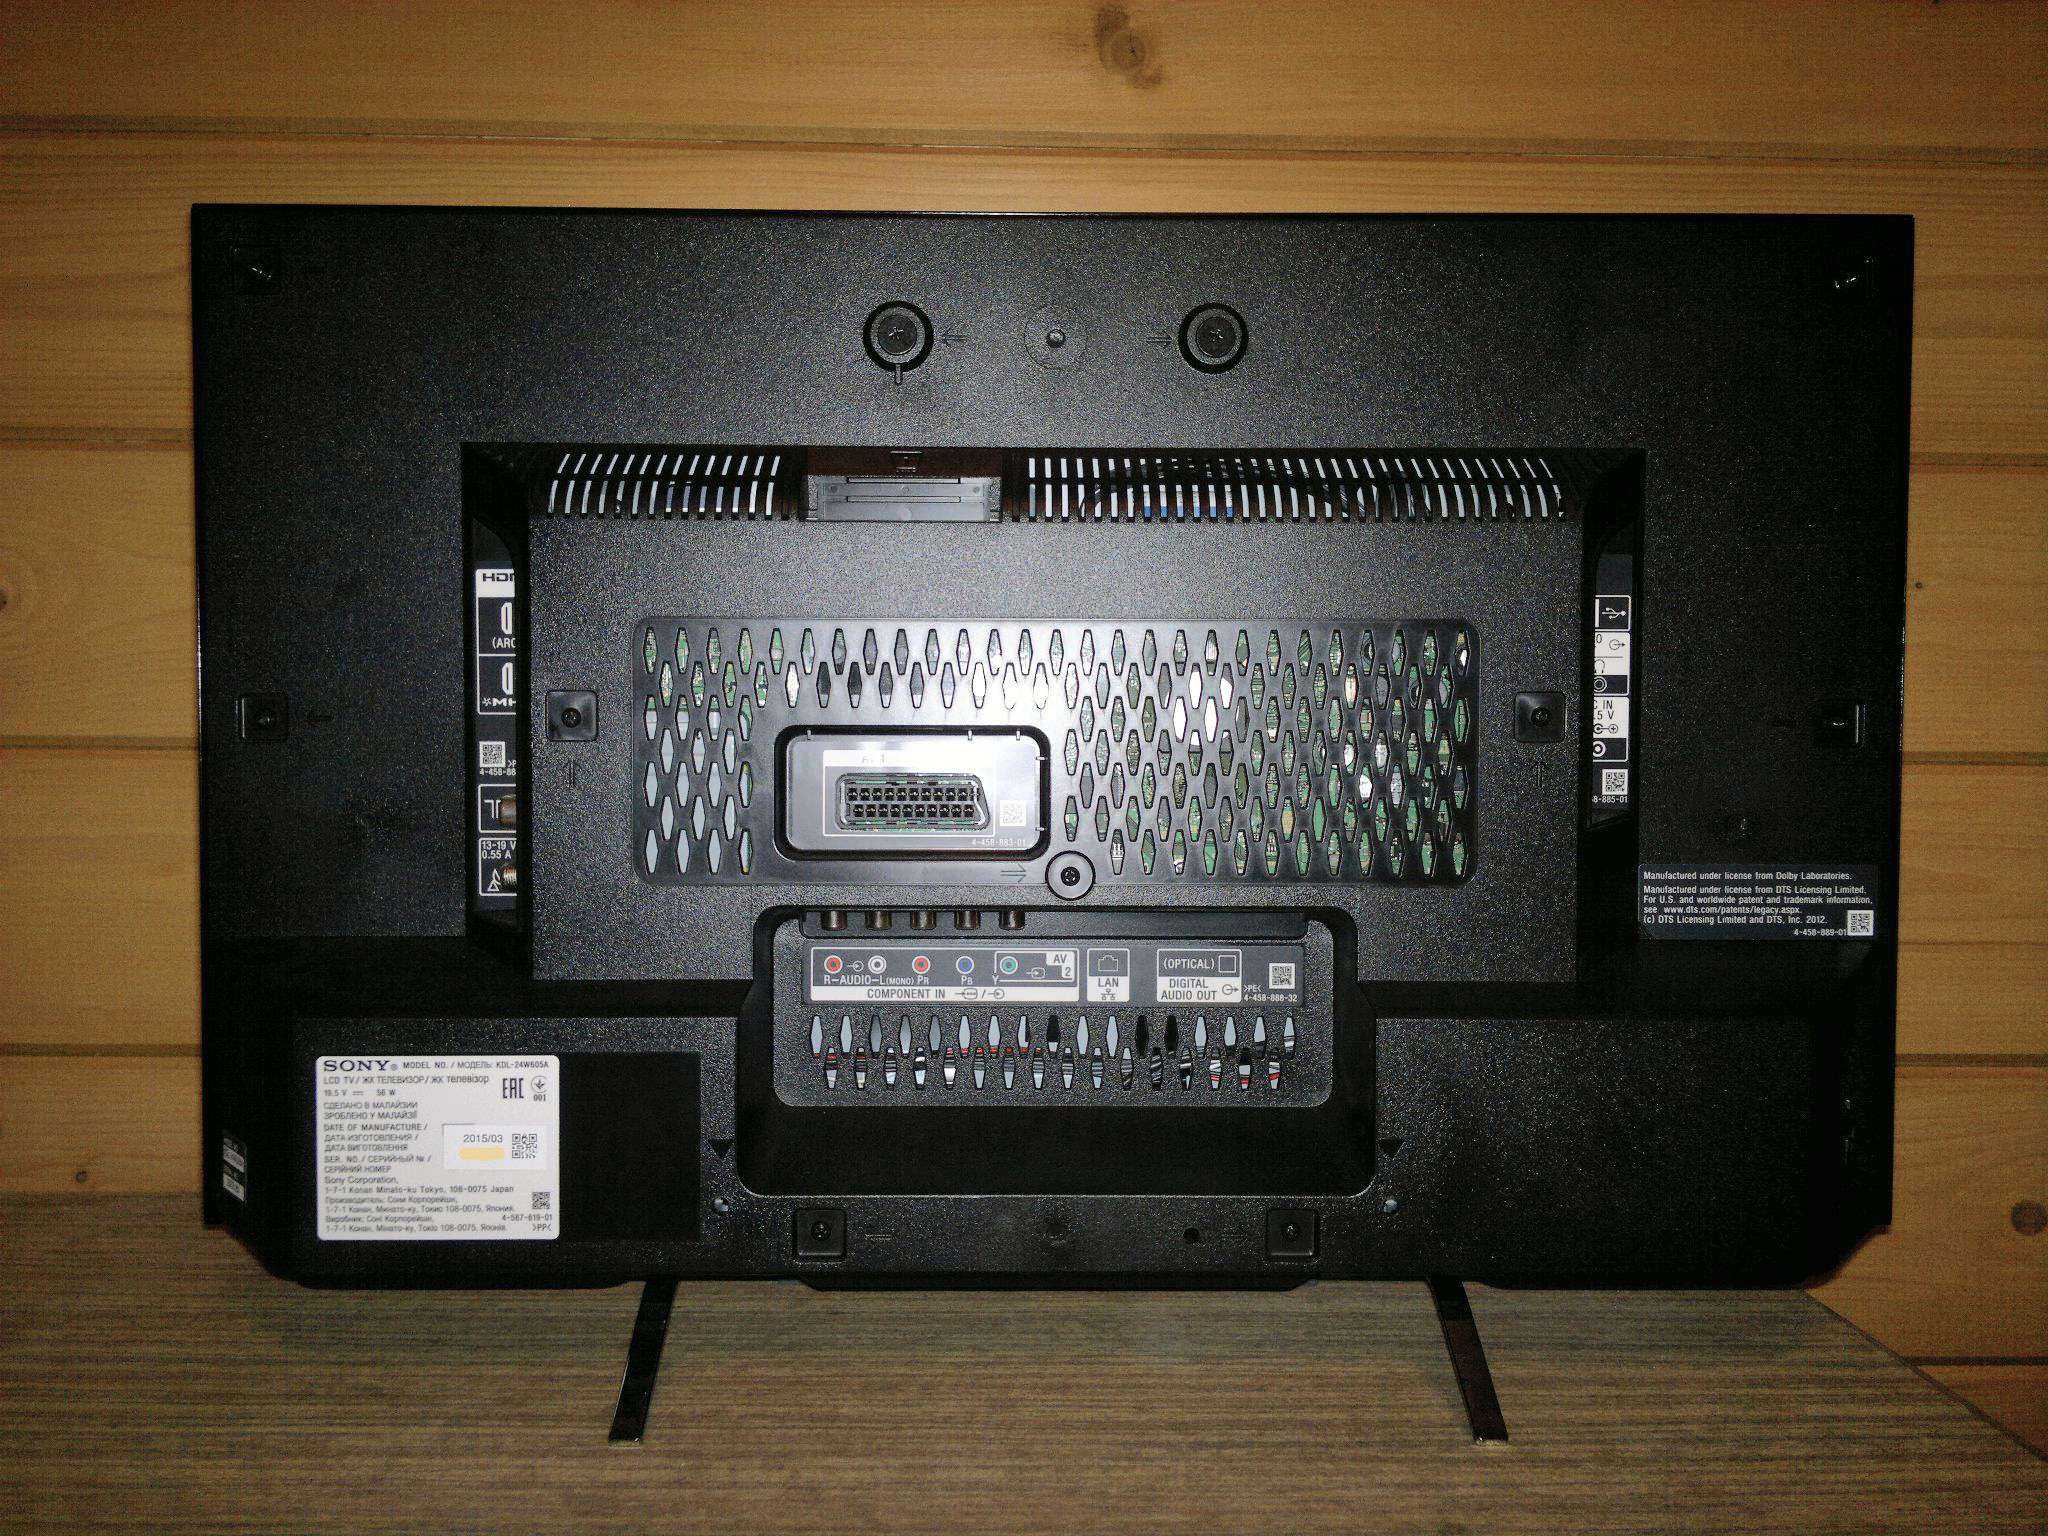 Led-телевизор sony kdl-24w605a my (черный) (kdl24w605abr) купить от 24989 руб в нижнем новгороде, сравнить цены, отзывы, видео обзоры и характеристики